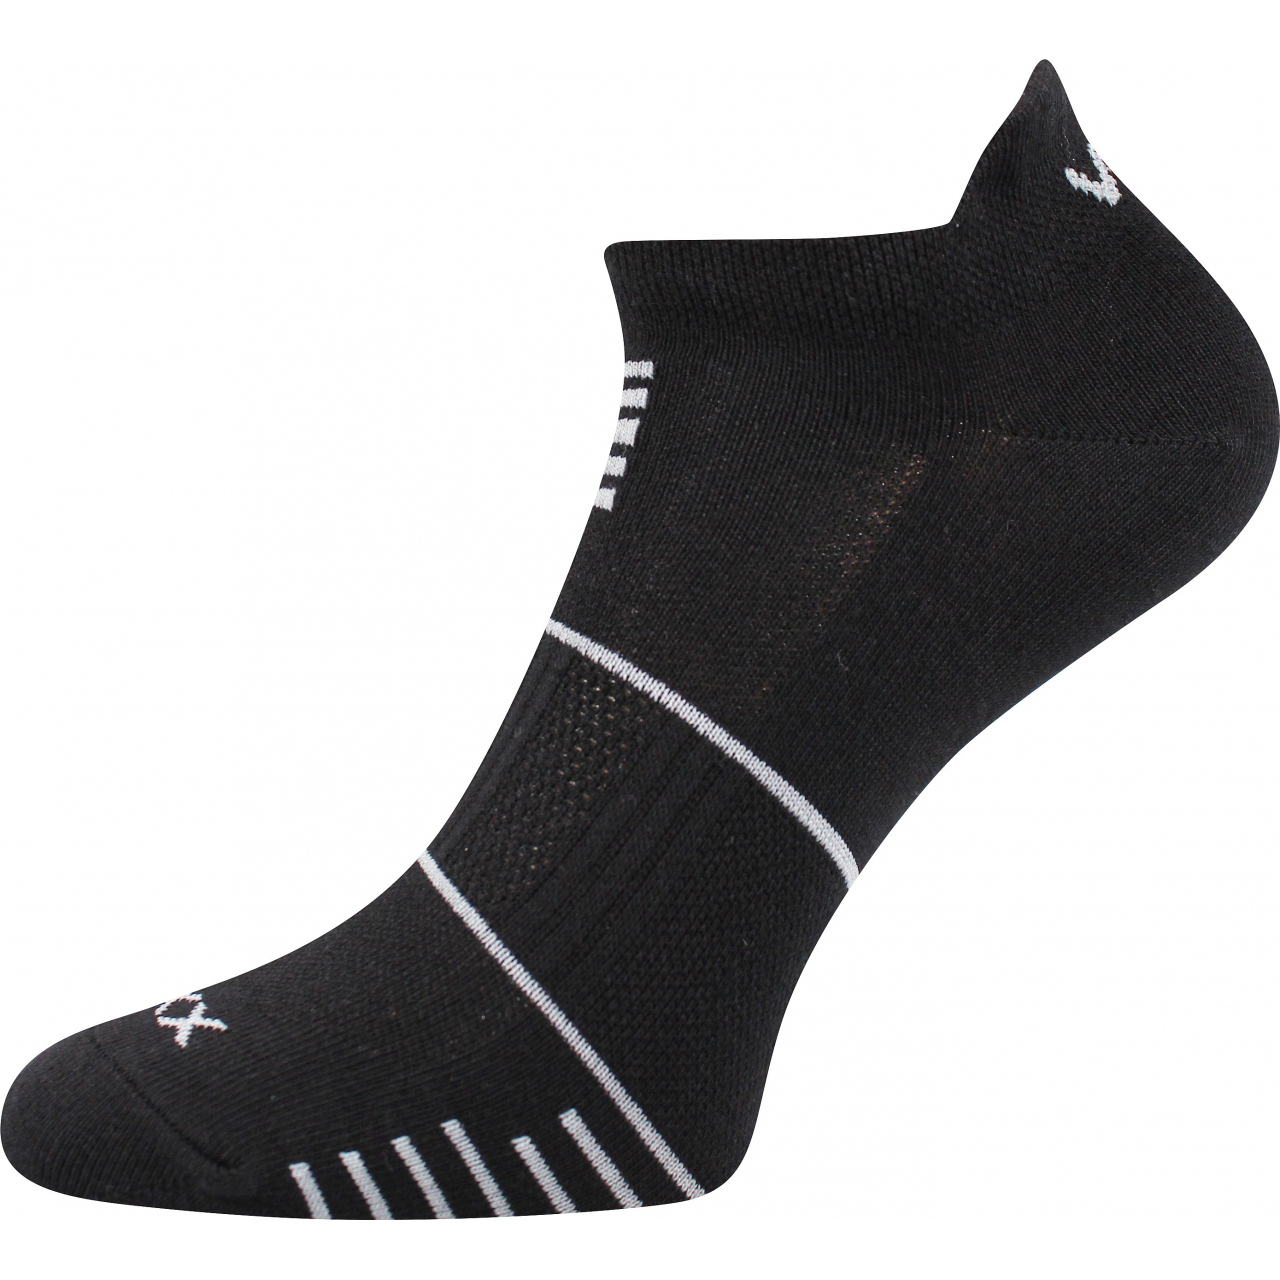 Ponožky sportovní unisex Voxx Avenar - černé, 43-46